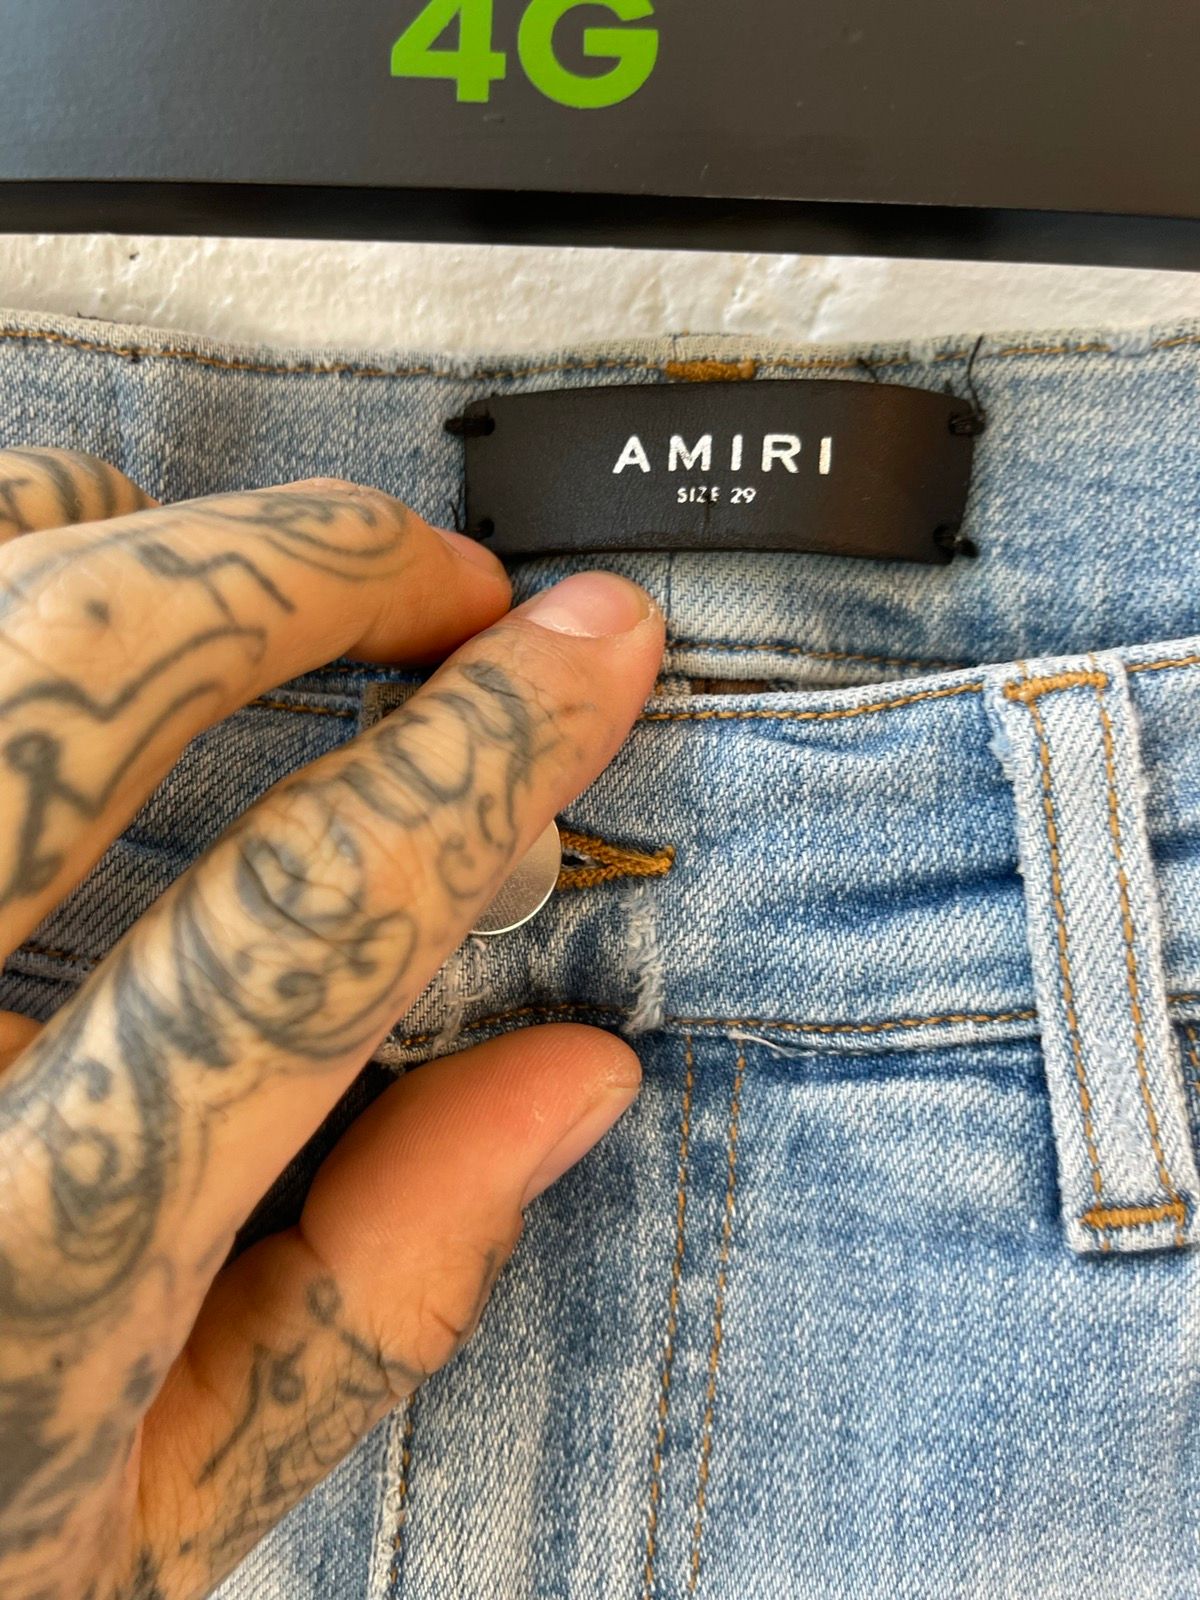 Amiri Light Blue Distressed Skinny jeans sz 29